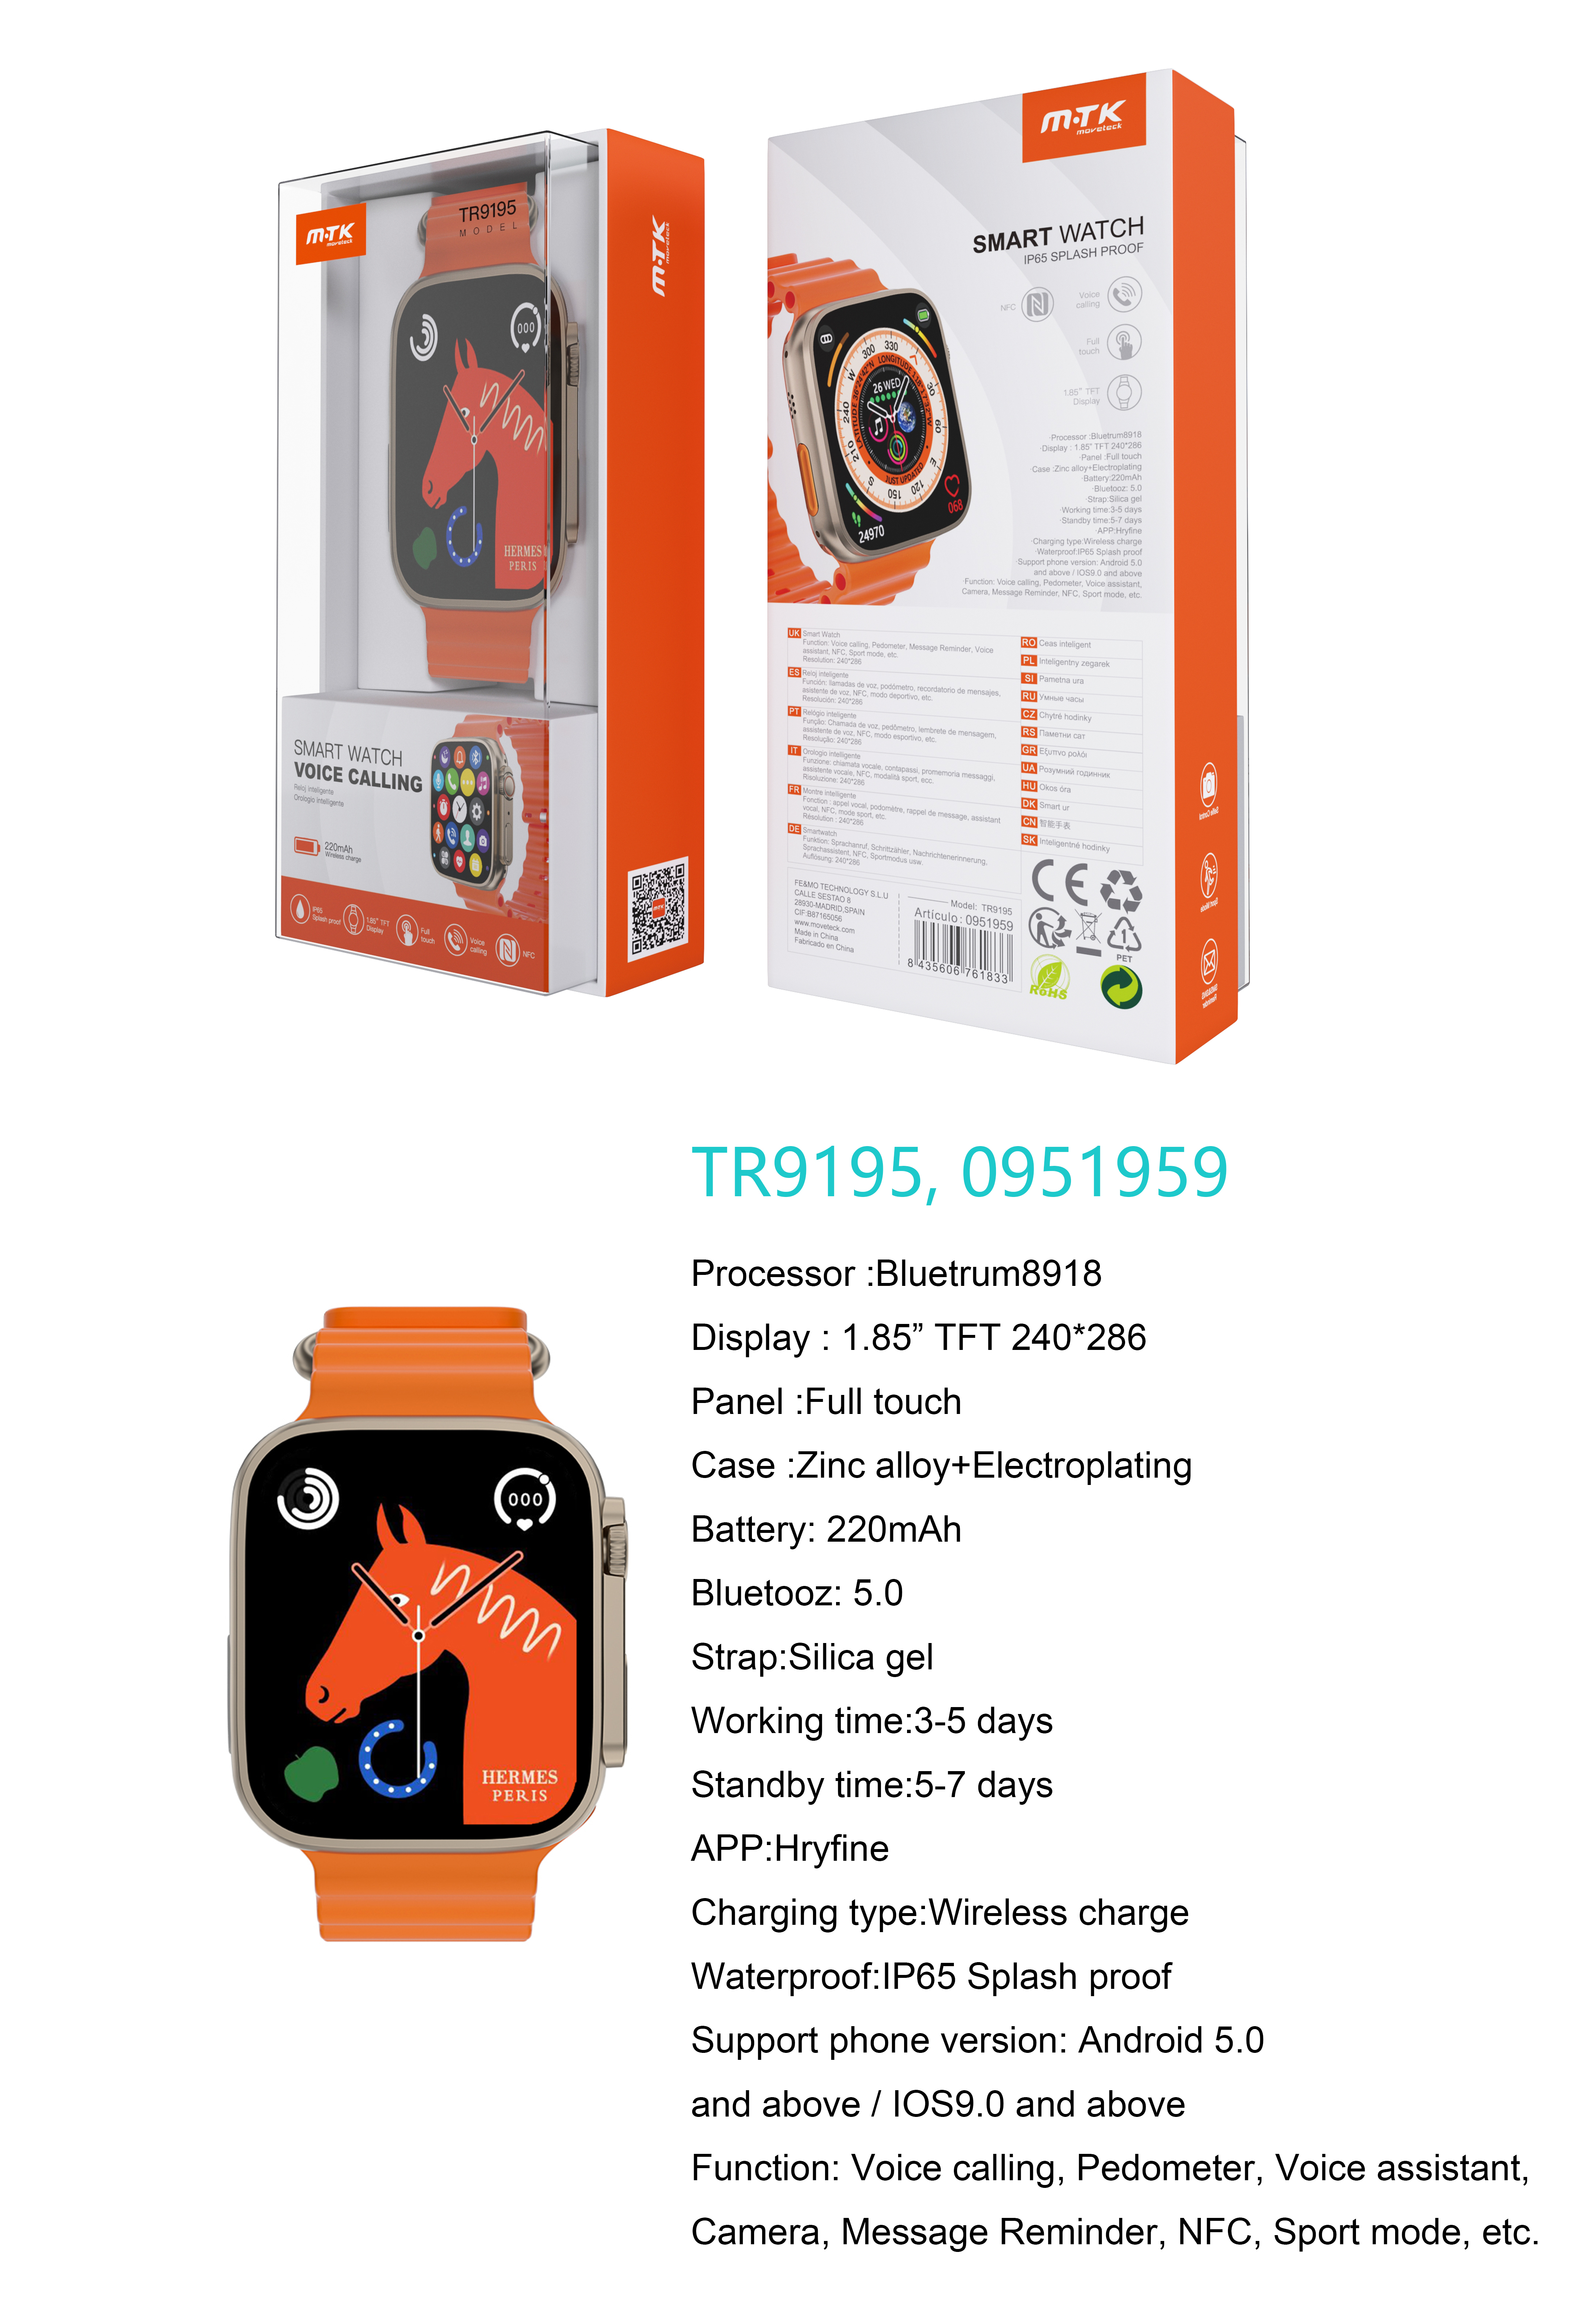 TR9195 OR Reloj Inteligente con bluetooth 5.0, Pantalla tactil de 1.85 pulgadas, Soporta NFC, llemadas, Asistente de Voz,Impermeable IP65, Bateria 220